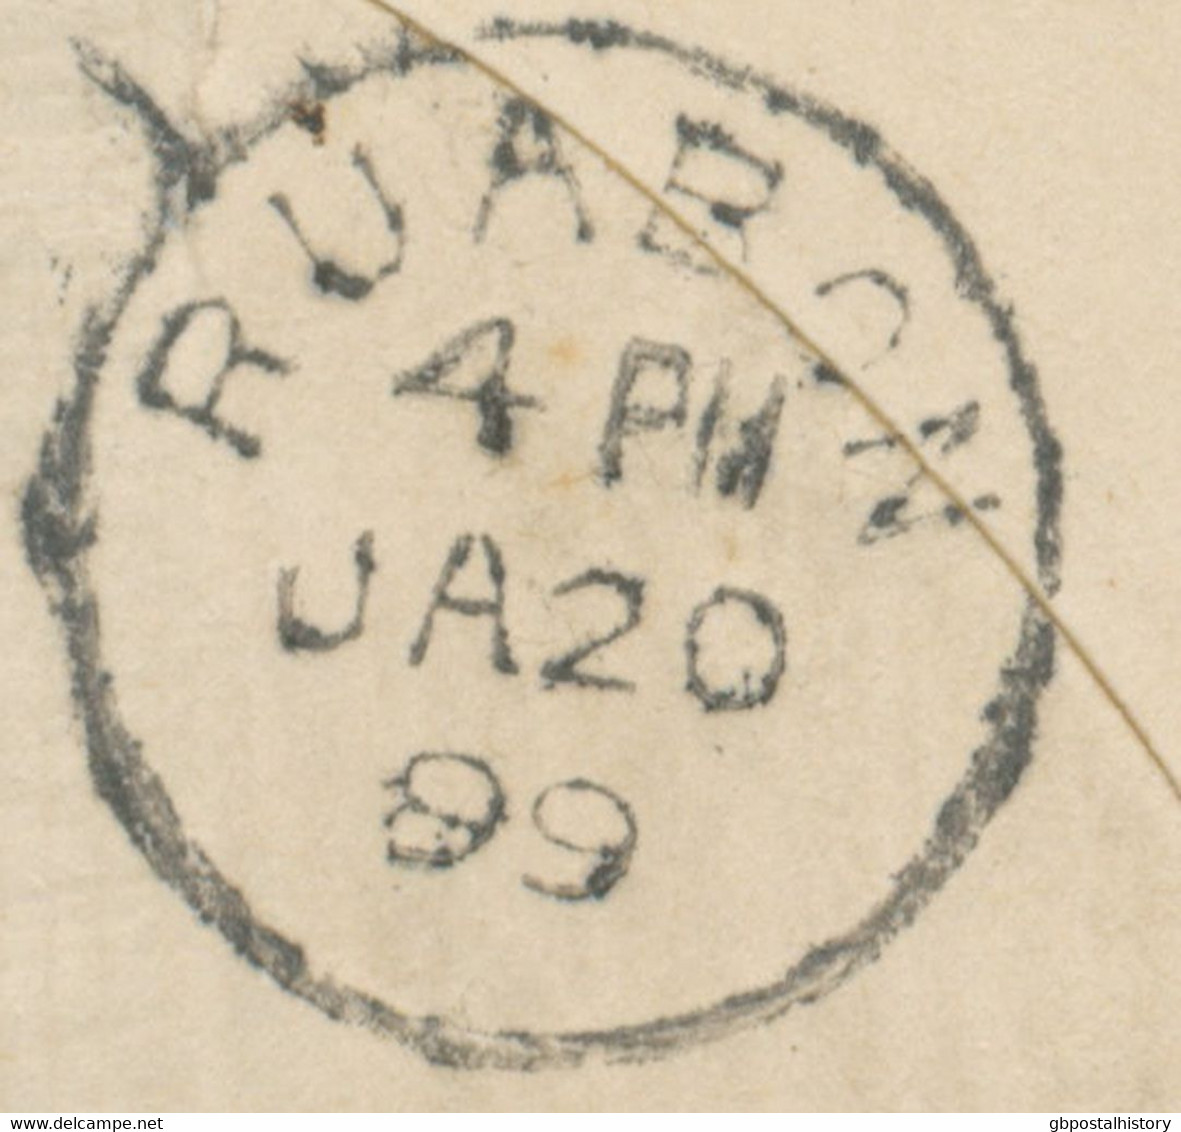 GB 1899 superb 2d blue QV registered provisional postal stationery envelope (Huggins RP21G provisional) uprated w 2 1/2d